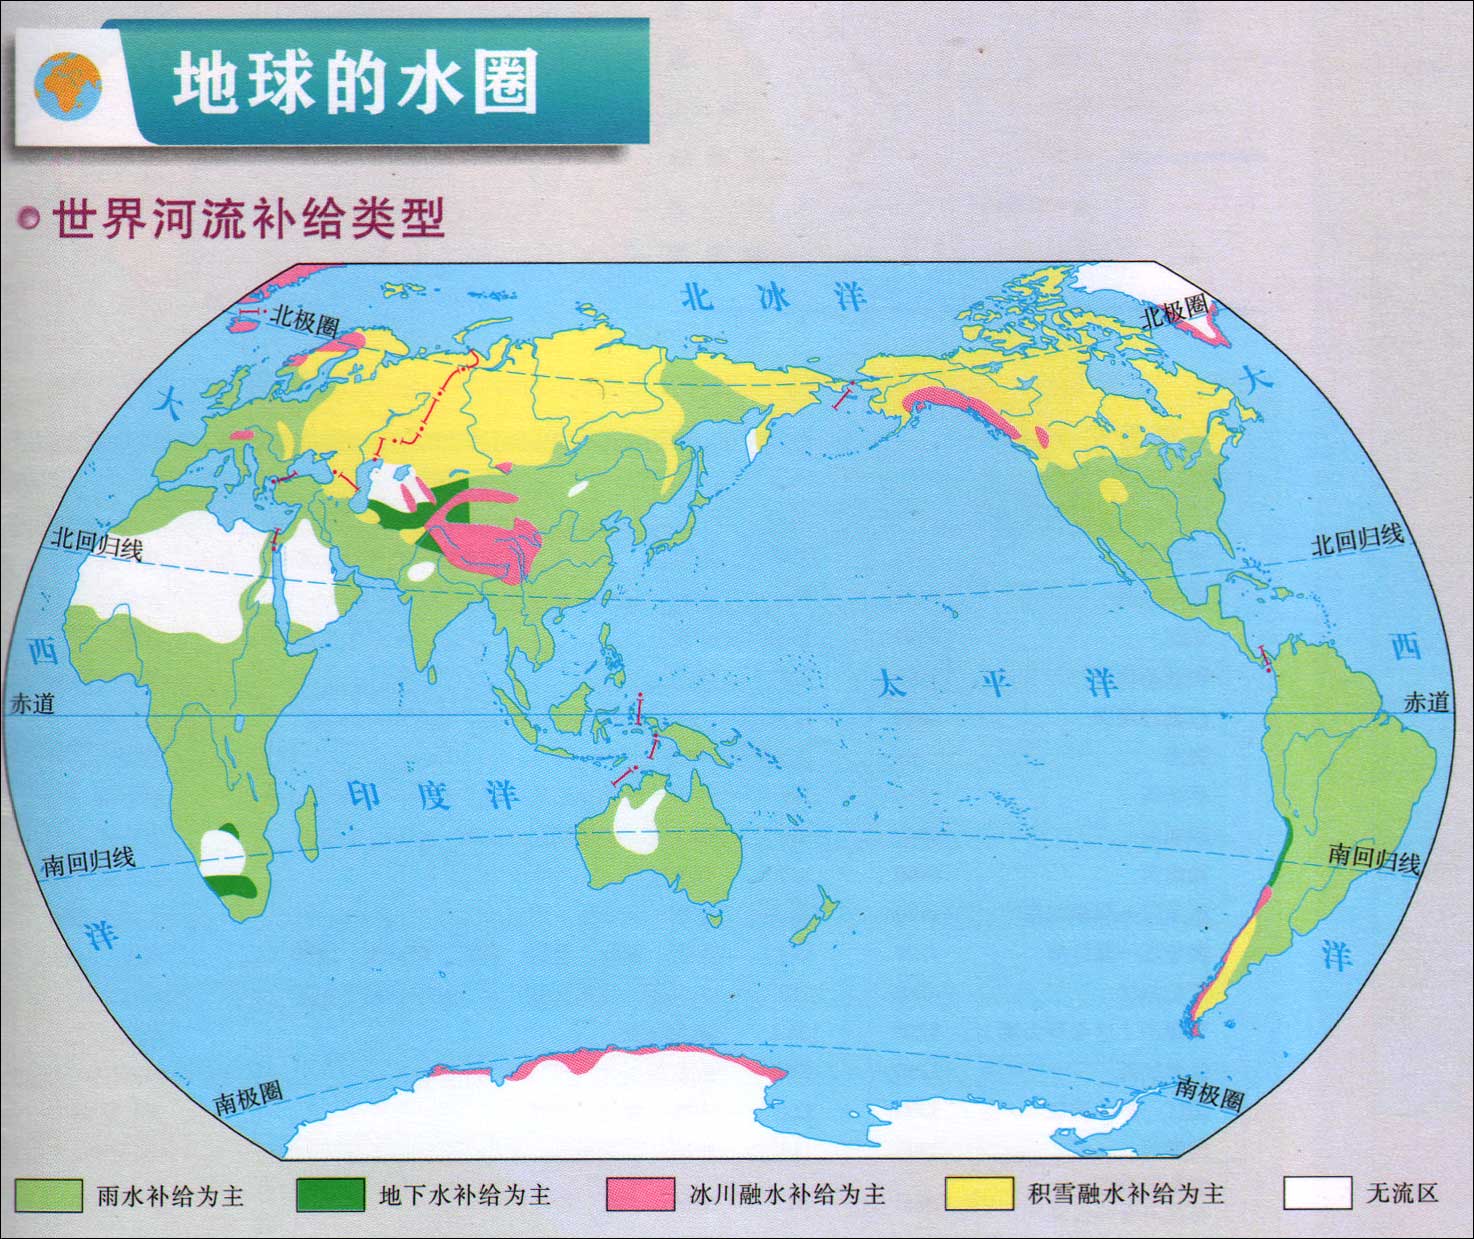 世界河流补给类型示意图_世界地理地图查询